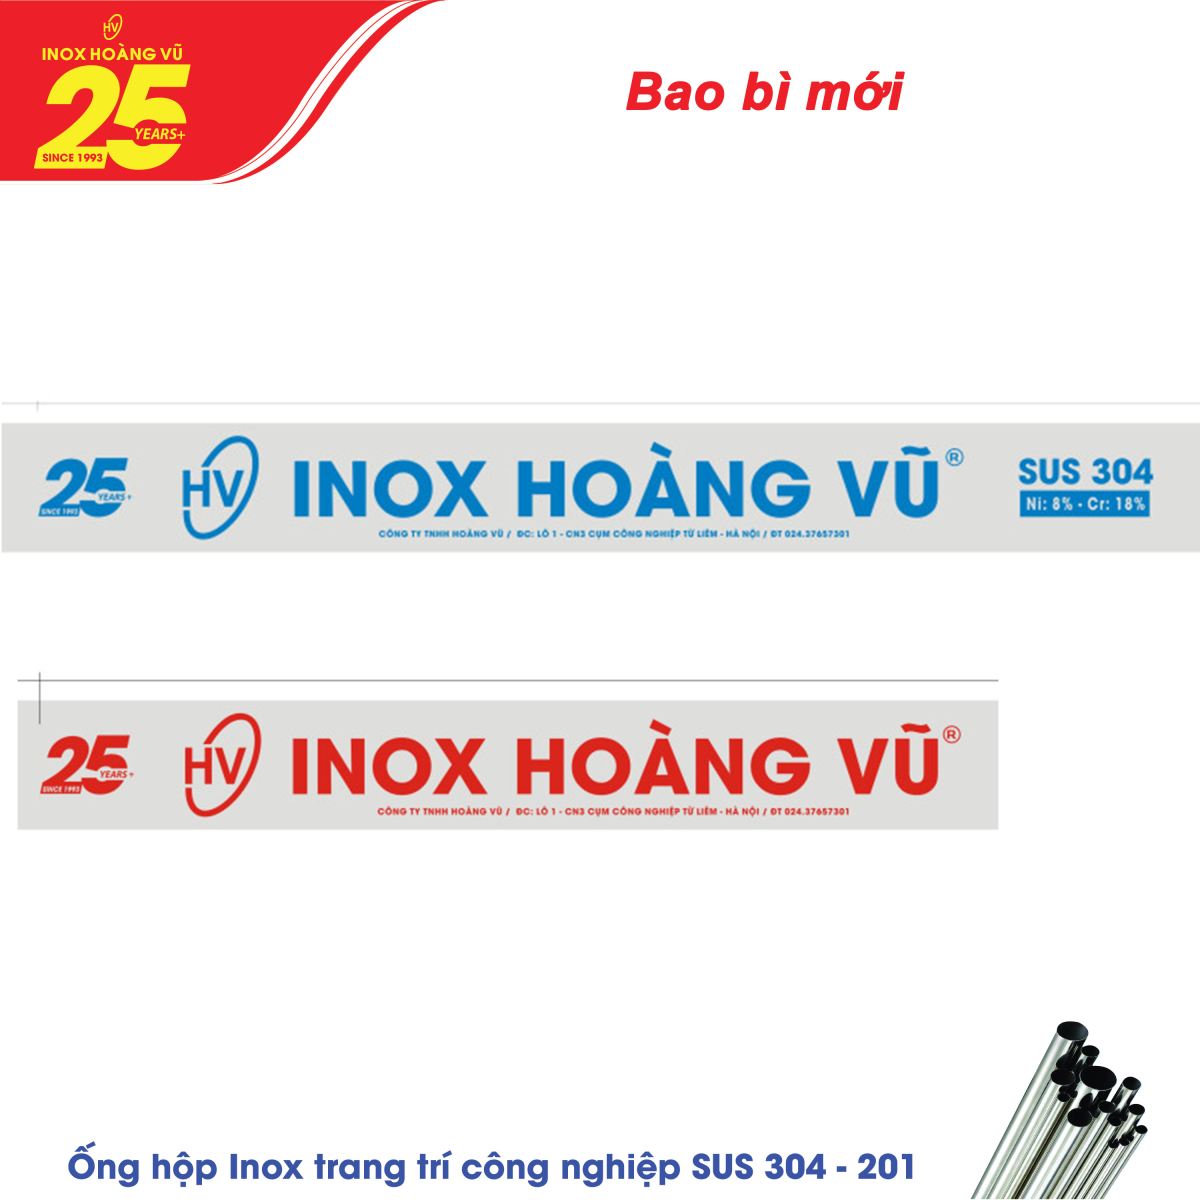  Inox Hoàng Vũ thay đổi bao bì sản phẩm để hướng tới kỷ niệm 25 năm thành lập Tập đoàn